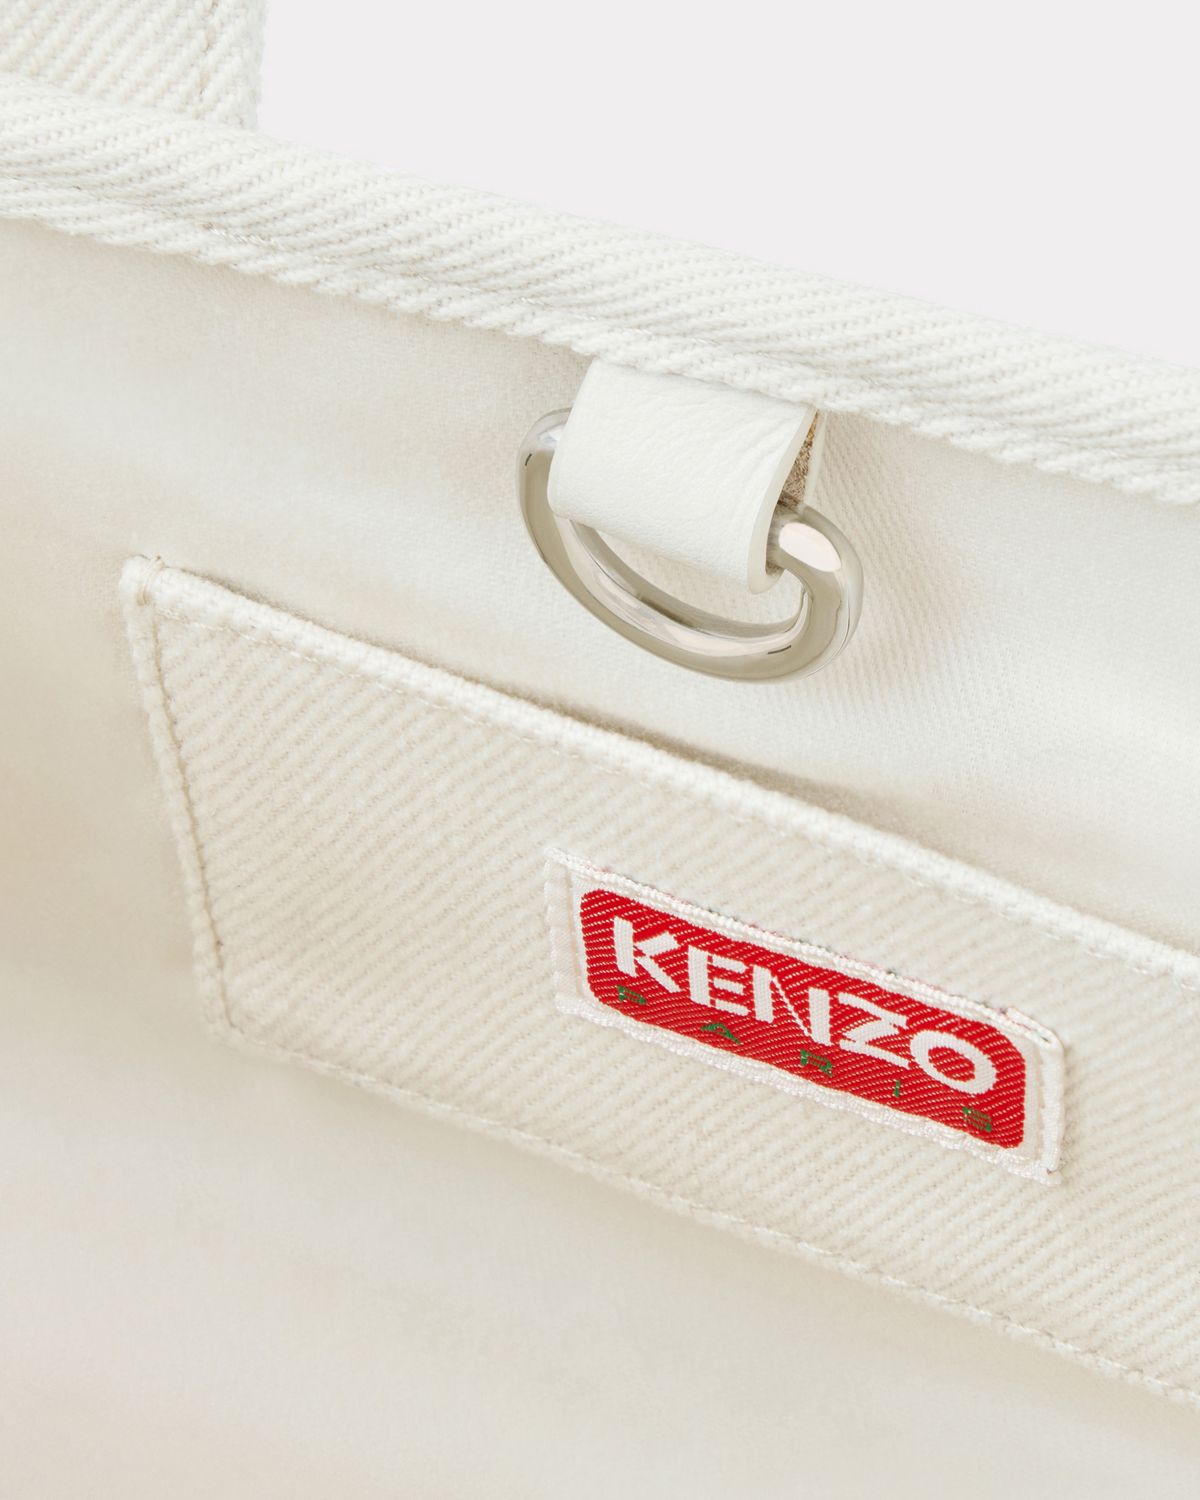 KENZO - 【限定】 KENZO x VERDY / SMALL TOTE BAG / スモールトート